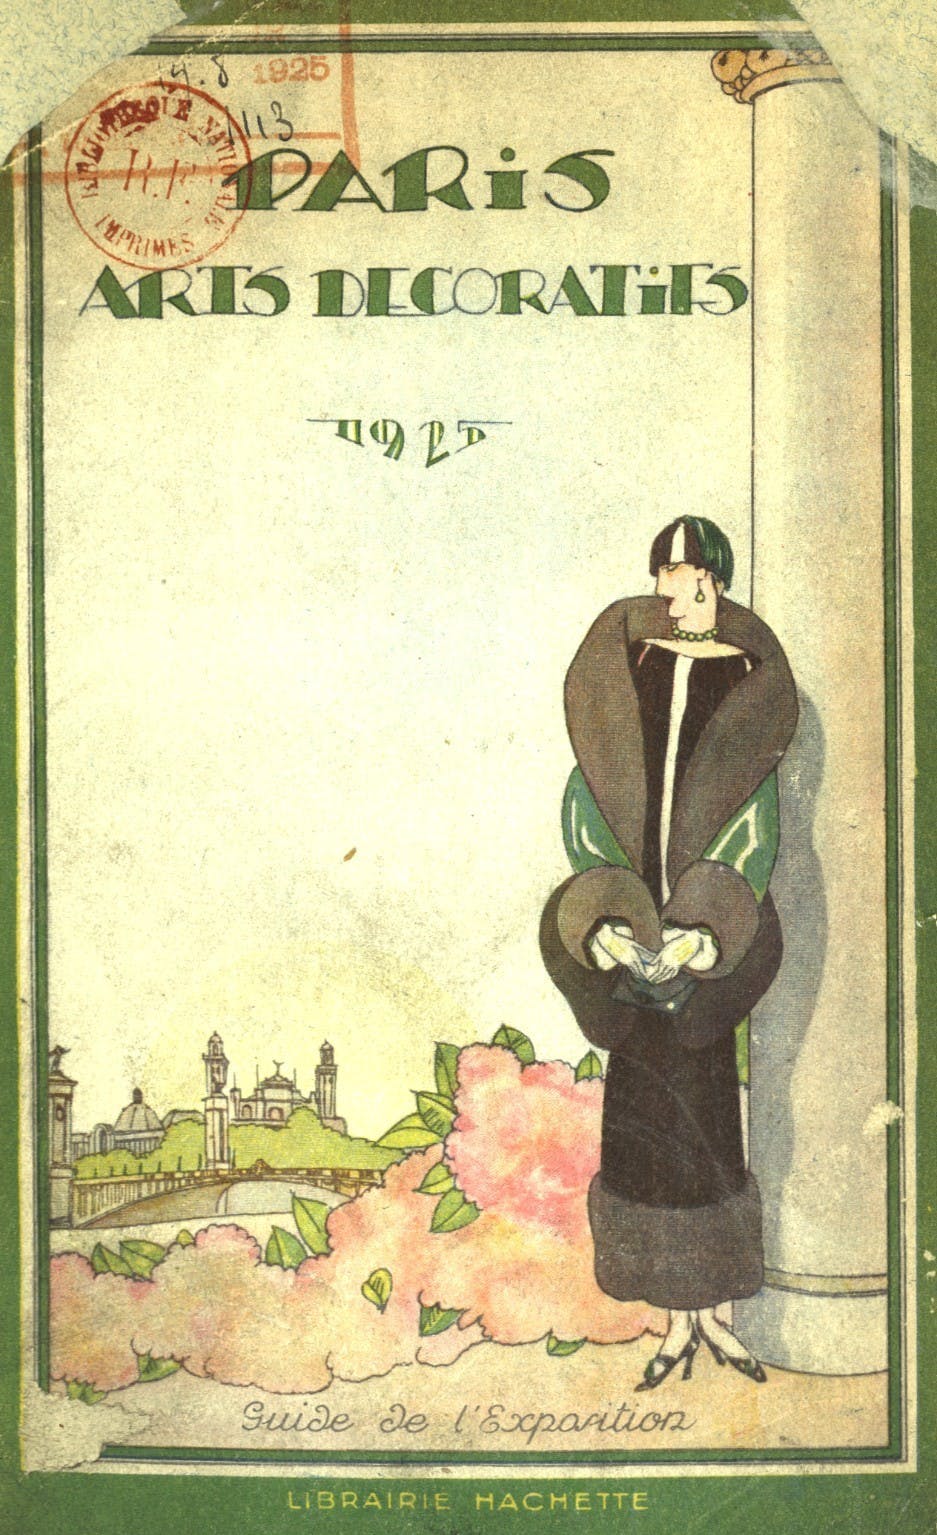 Paris, arts décoratifs, 1925: guide de l'exposition  (Exhibition Guide), Ed. Hachette, 1925 © Source gallica.bnf.fr / BnF